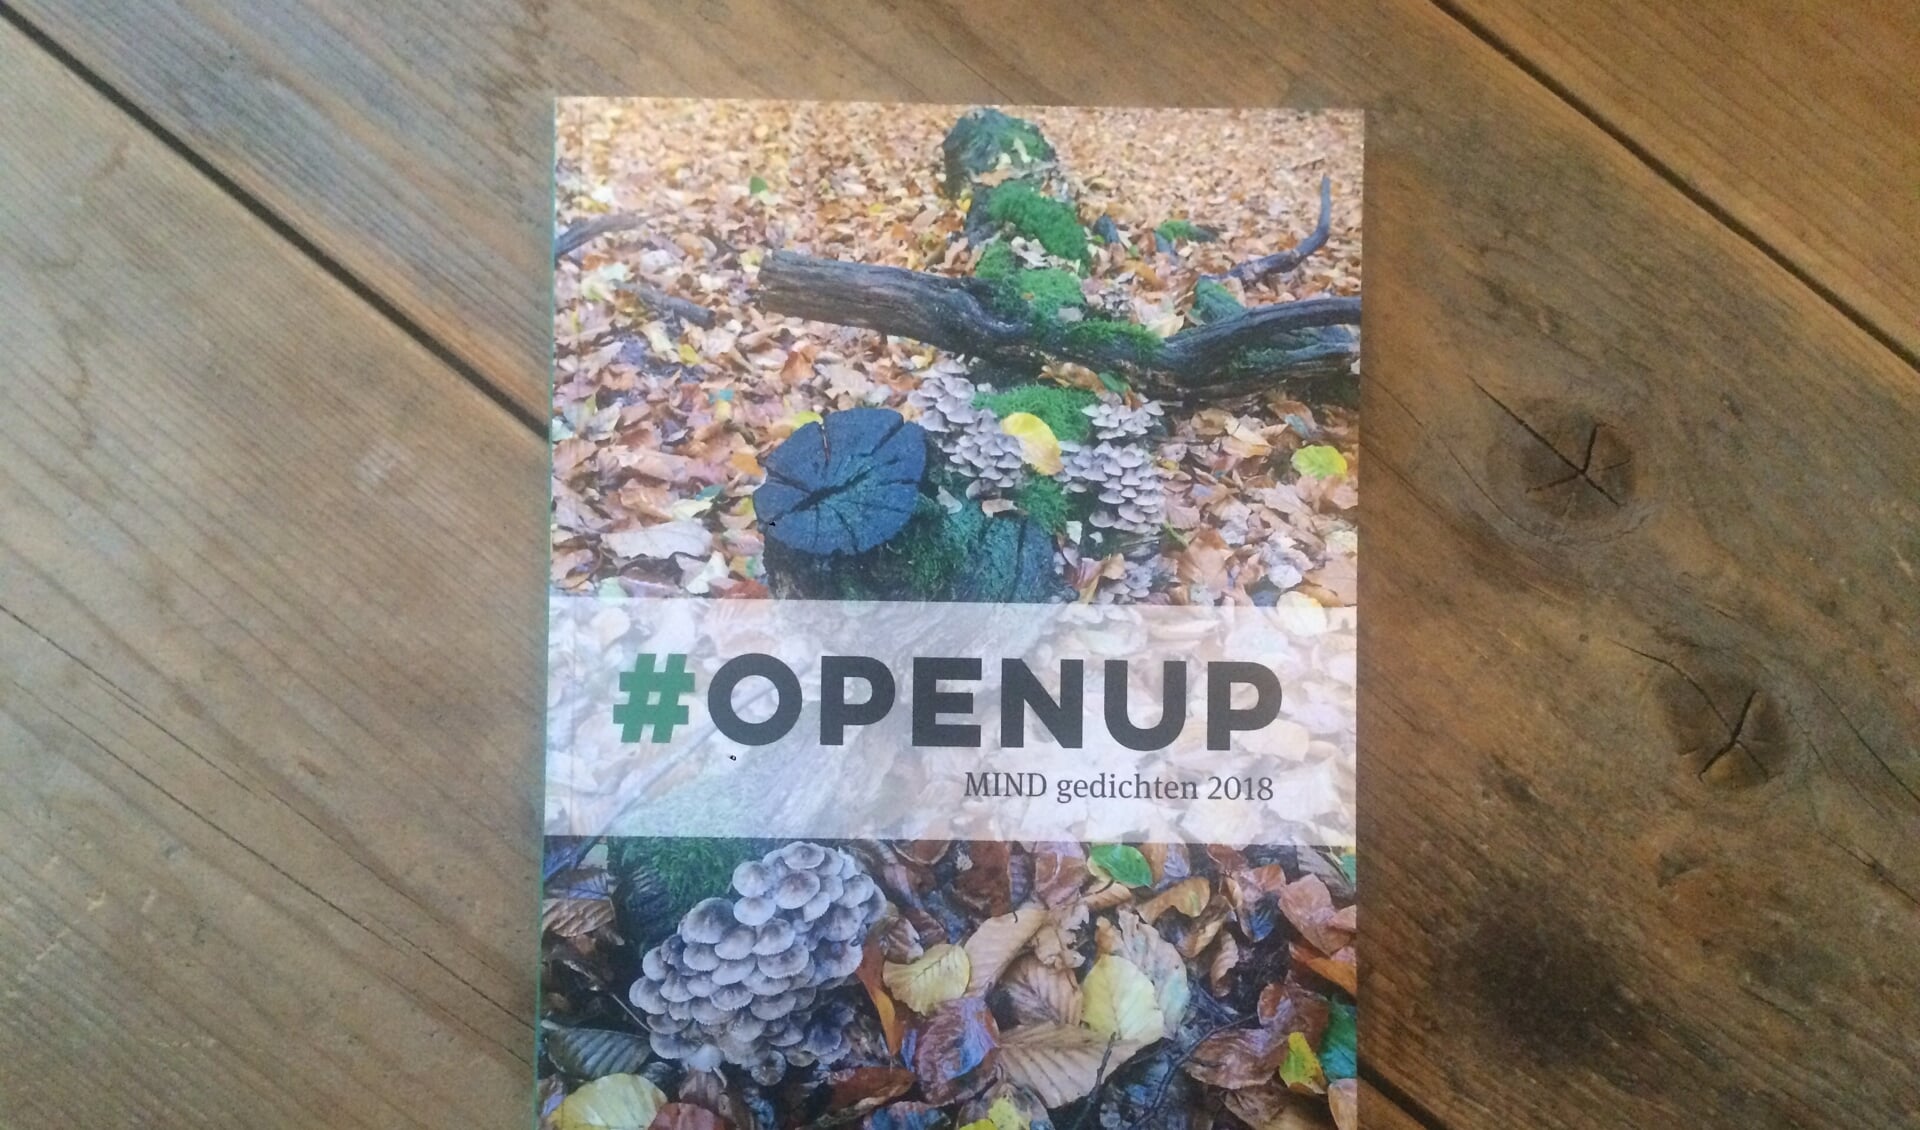 De gedichtenbundel #Openup, uitgegeven door stichting MIND.